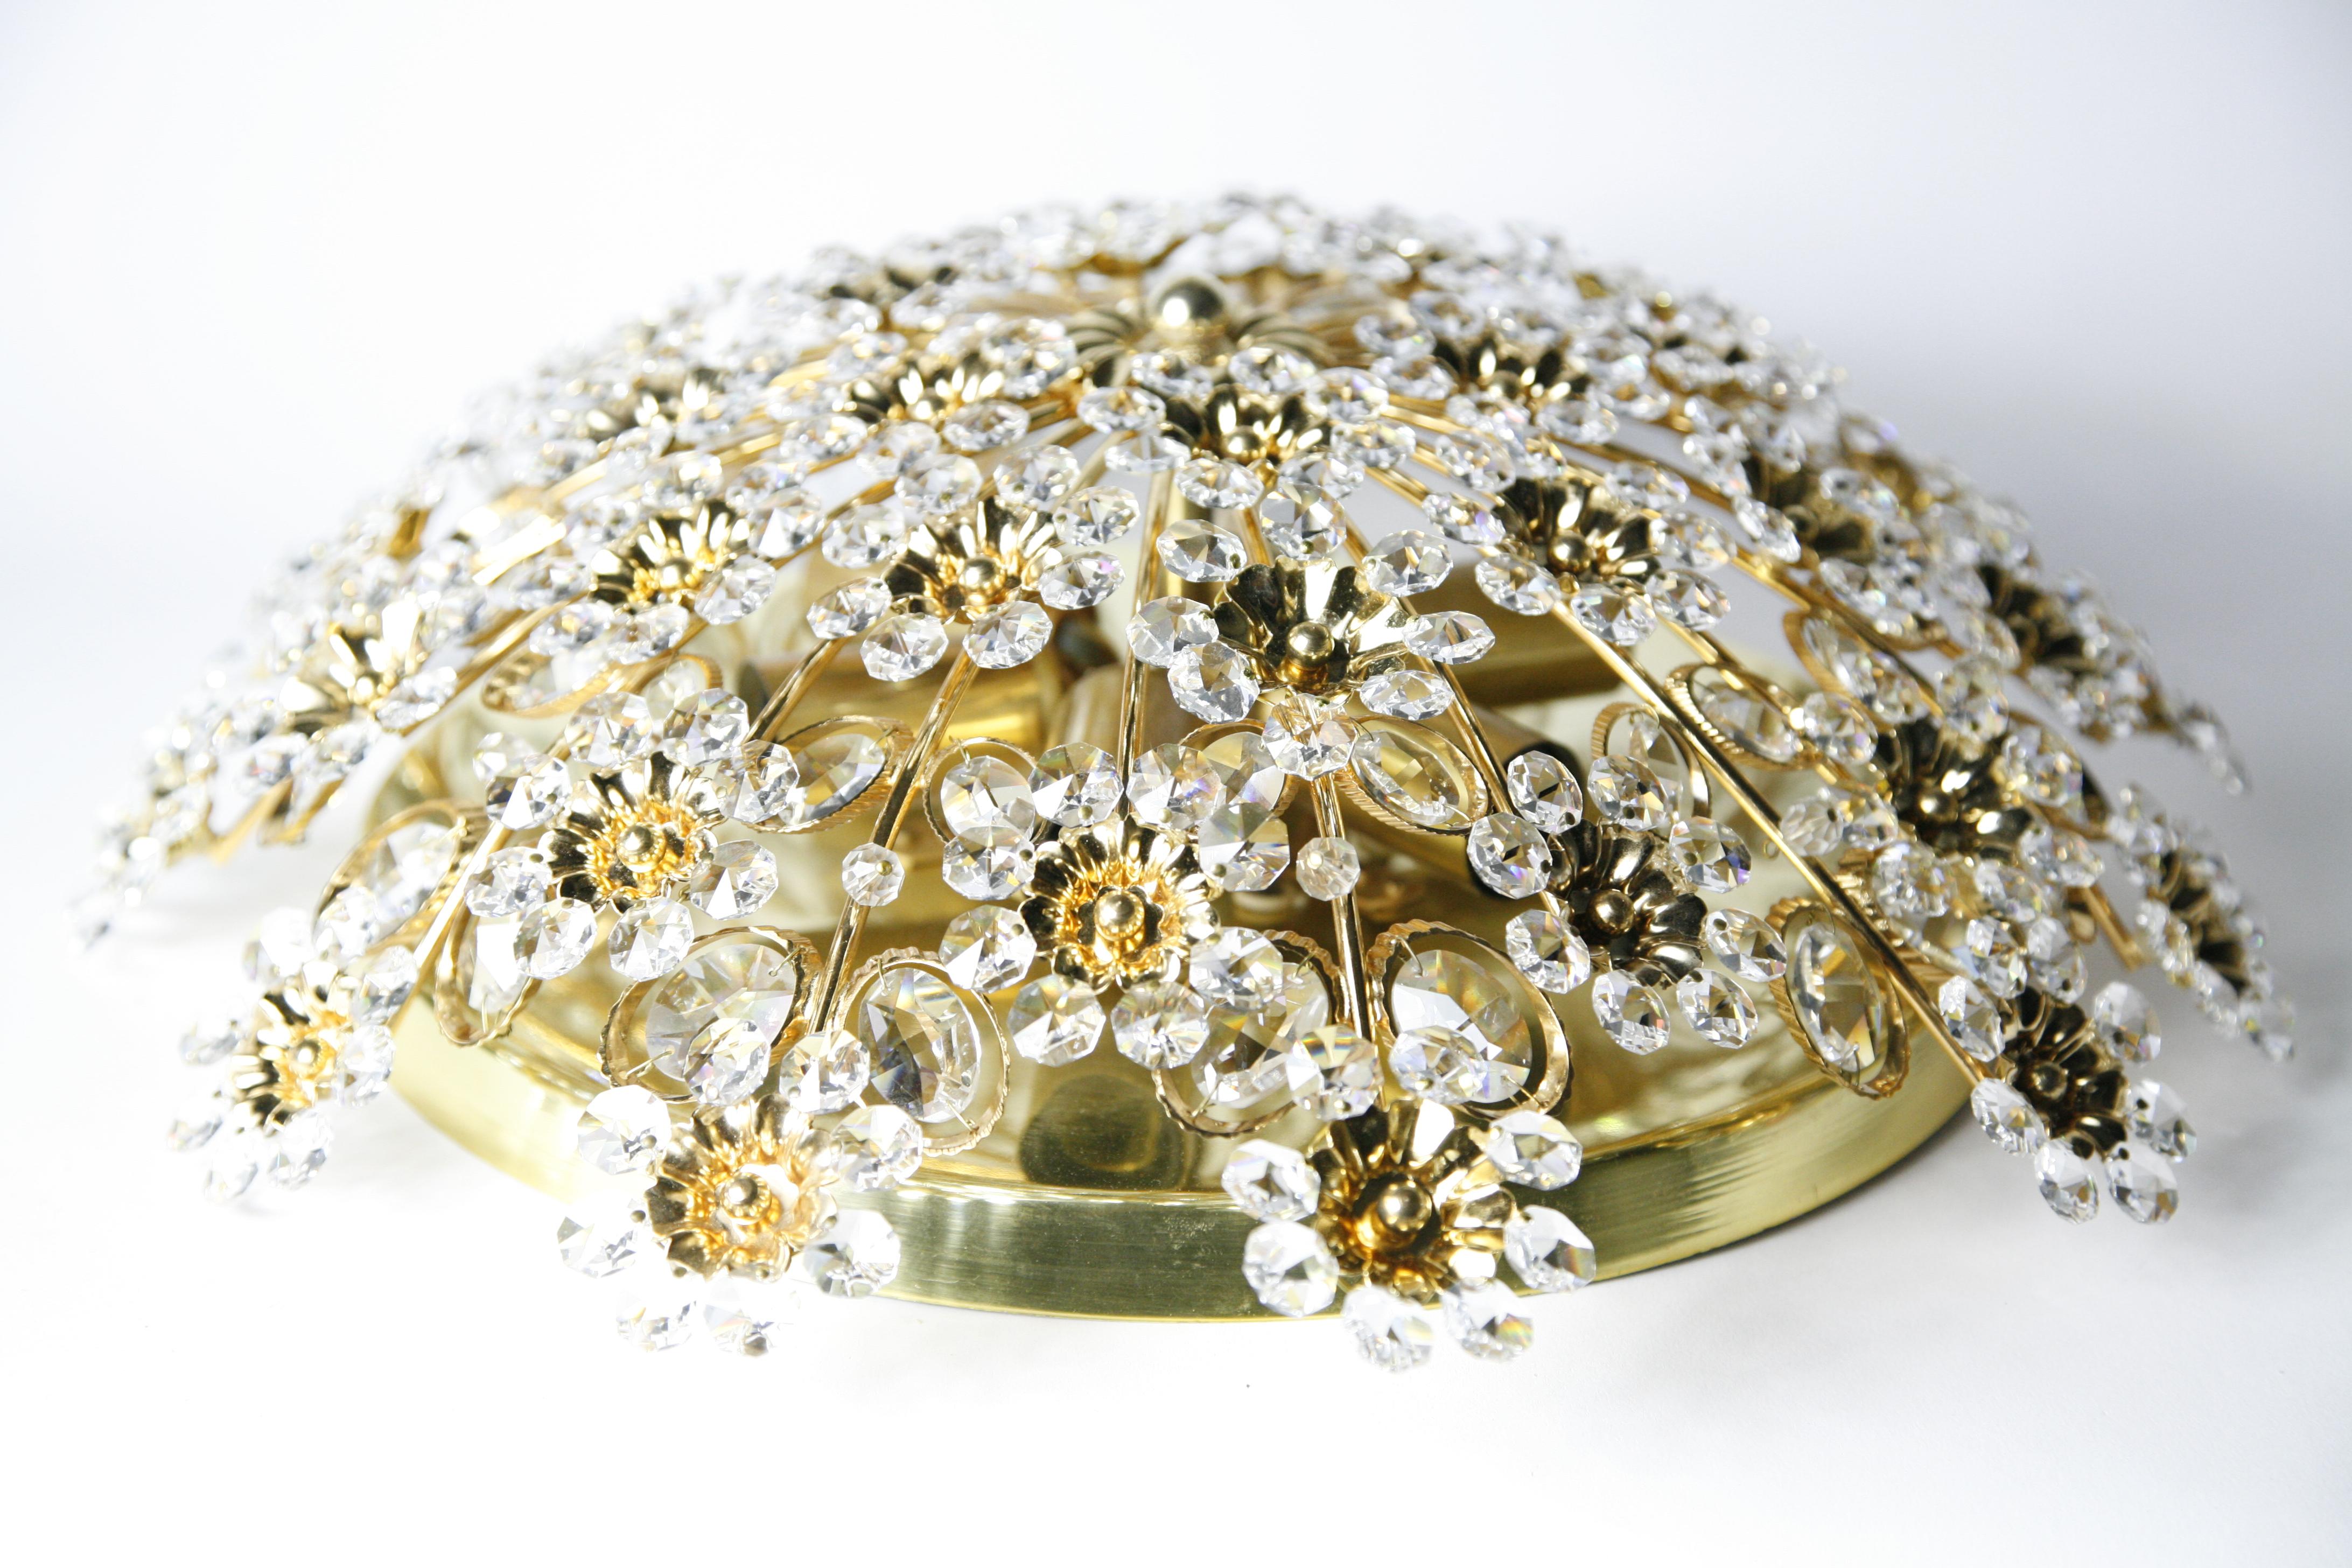 1970er Jahre runde Unterputzmontage  vergoldeter Rahmen mit zahlreichen geschliffenen Kristallen und Perlen in verschiedenen Größen, die in Form von Blumen angeordnet sind, Österreich.
Sechs europäische Kandelaberfassungen.

Signiert und nummeriert